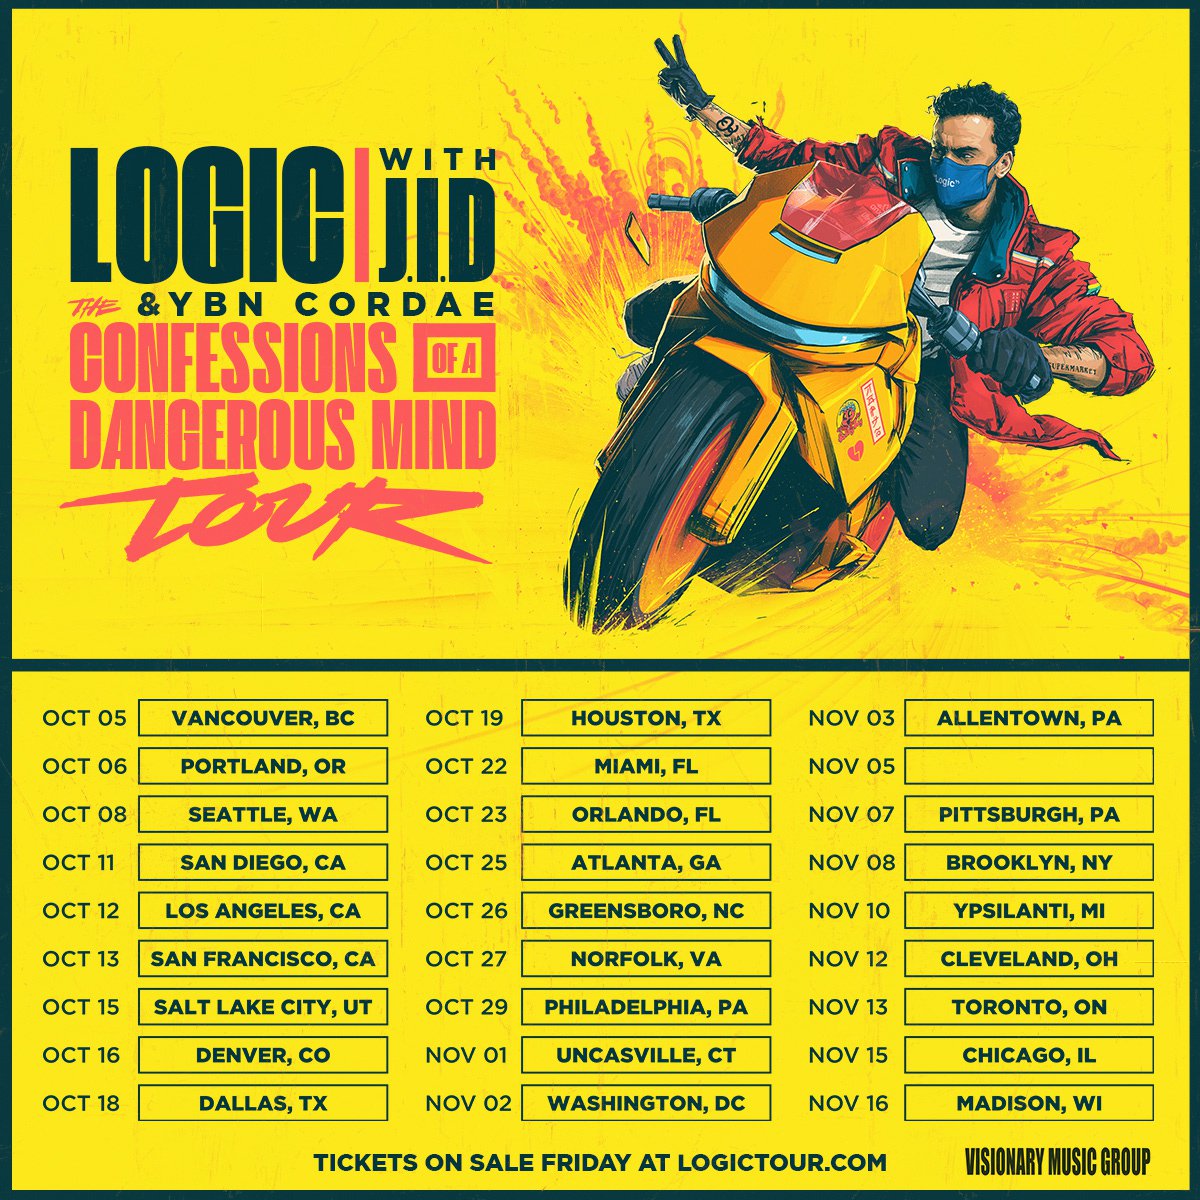 Logic Announces ‘Confessions of a Dangerous Mind’ Tour